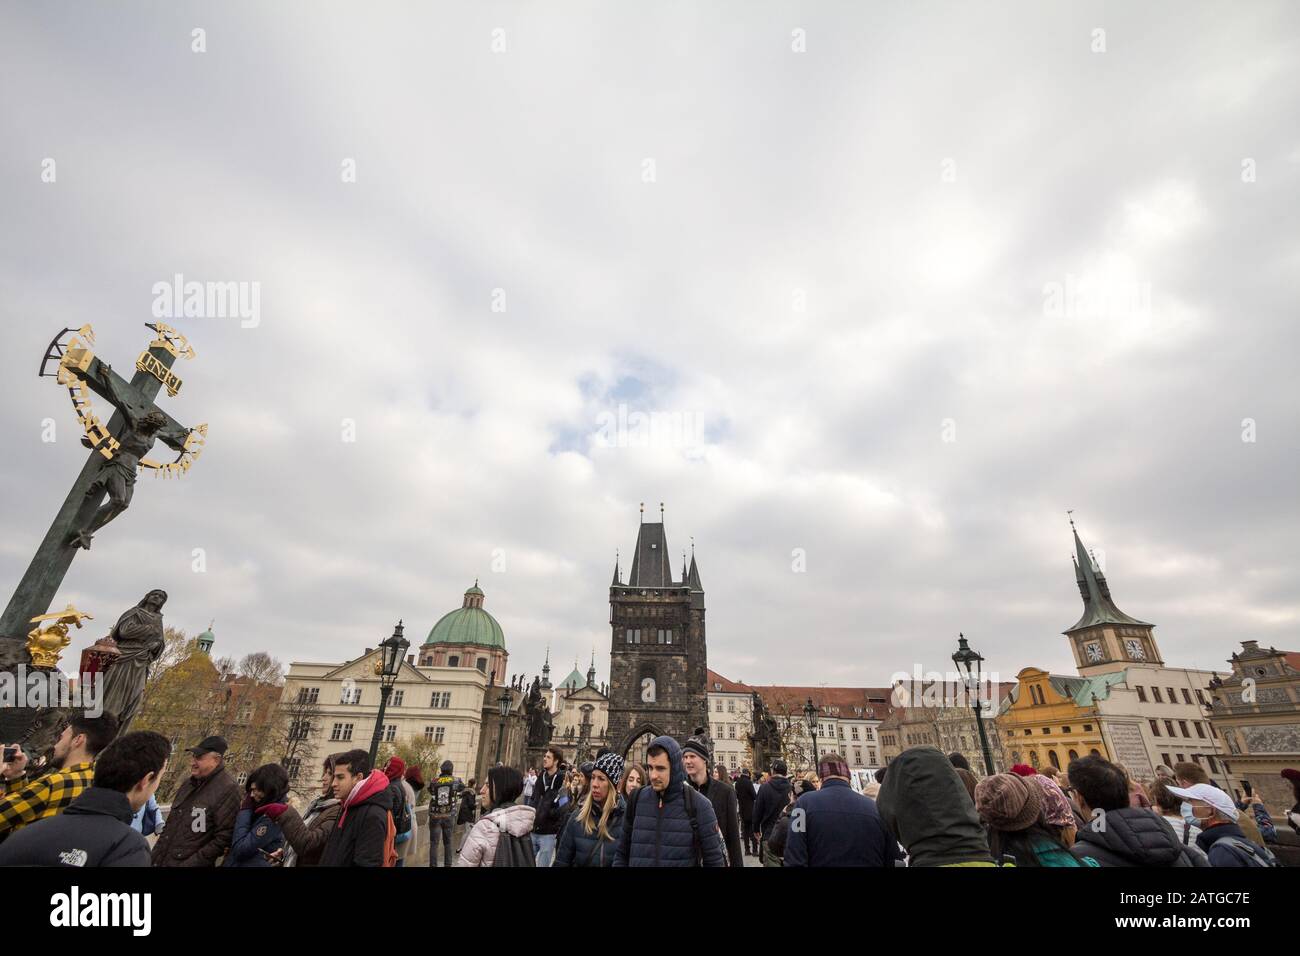 Prag, TSCHECHIEN - 1. NOVEMBER 2019: Alter Stadtbrücken-Turm der Karlsbrücke (Karluv Most) oder staromestska mostecka vez in Prag, Tschechien, siehe Stockfoto